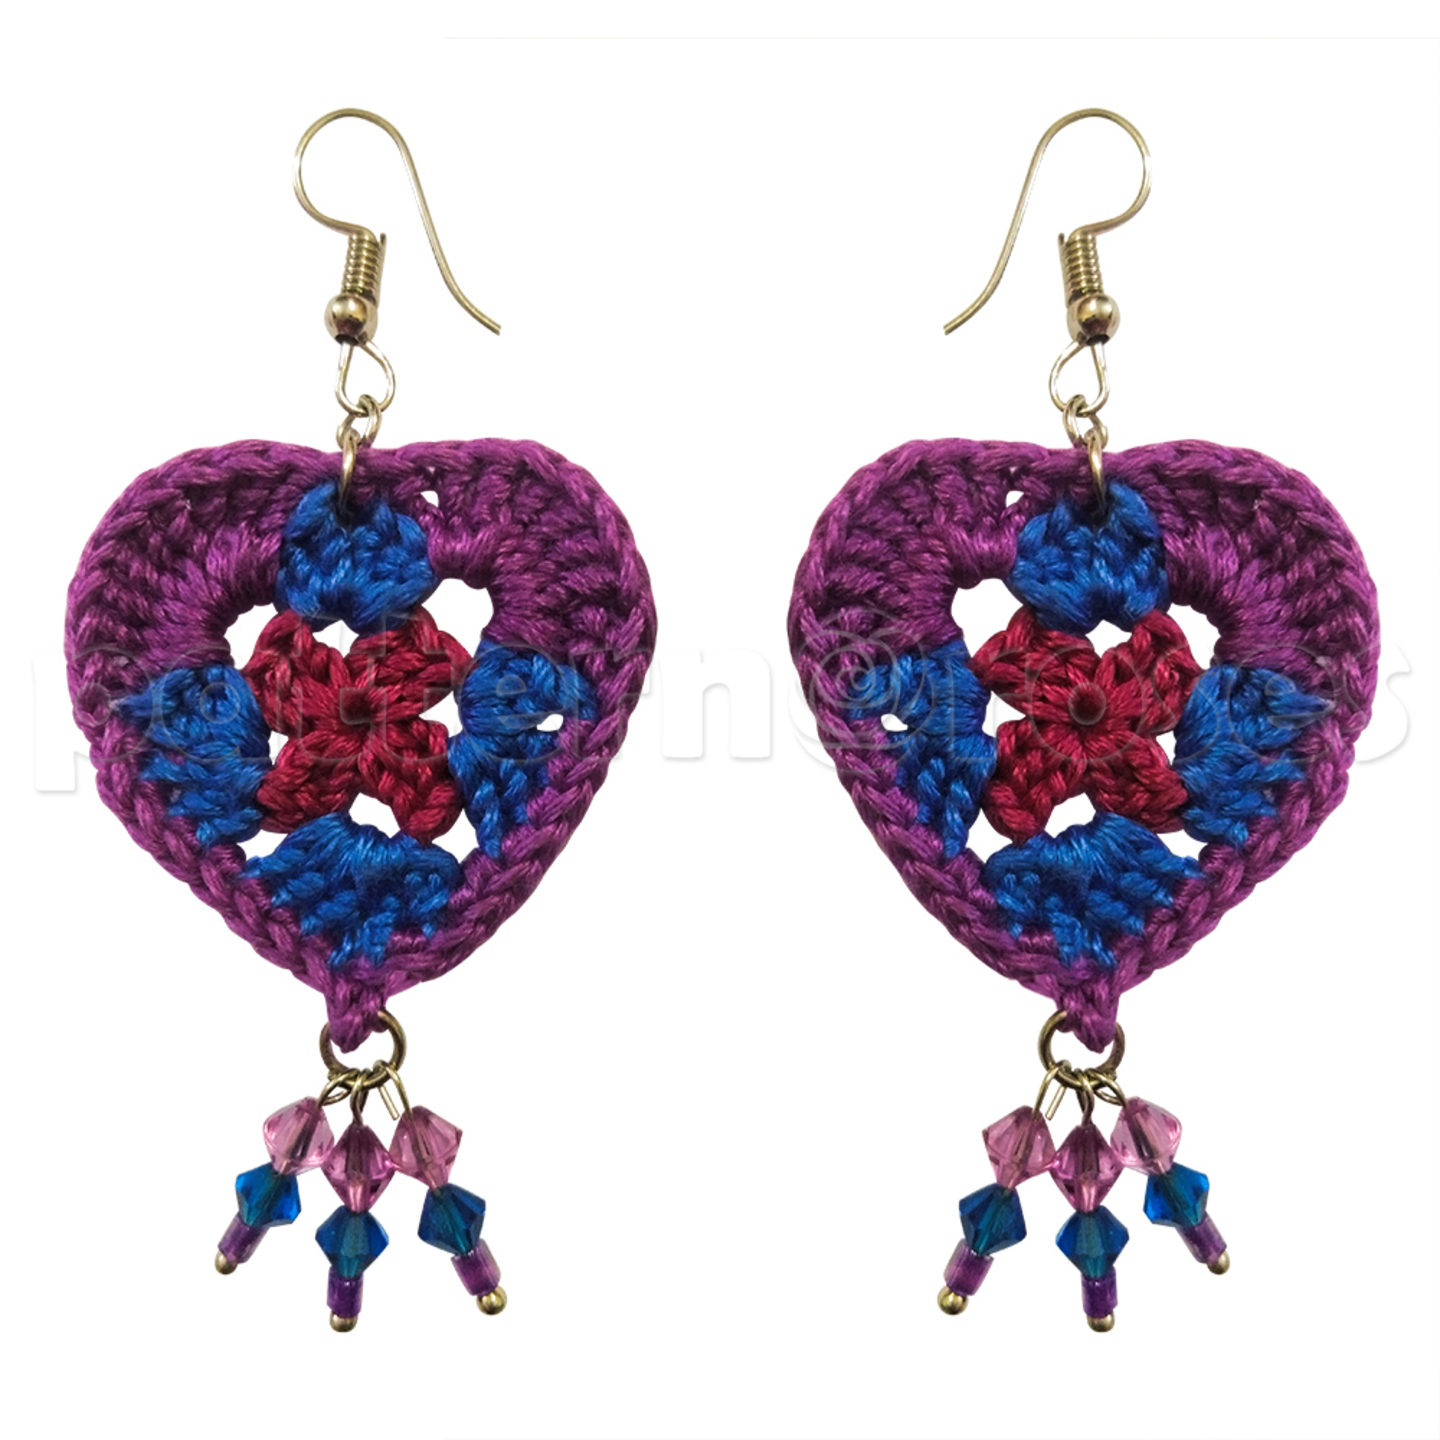 Crochet Heart Shape Earrings